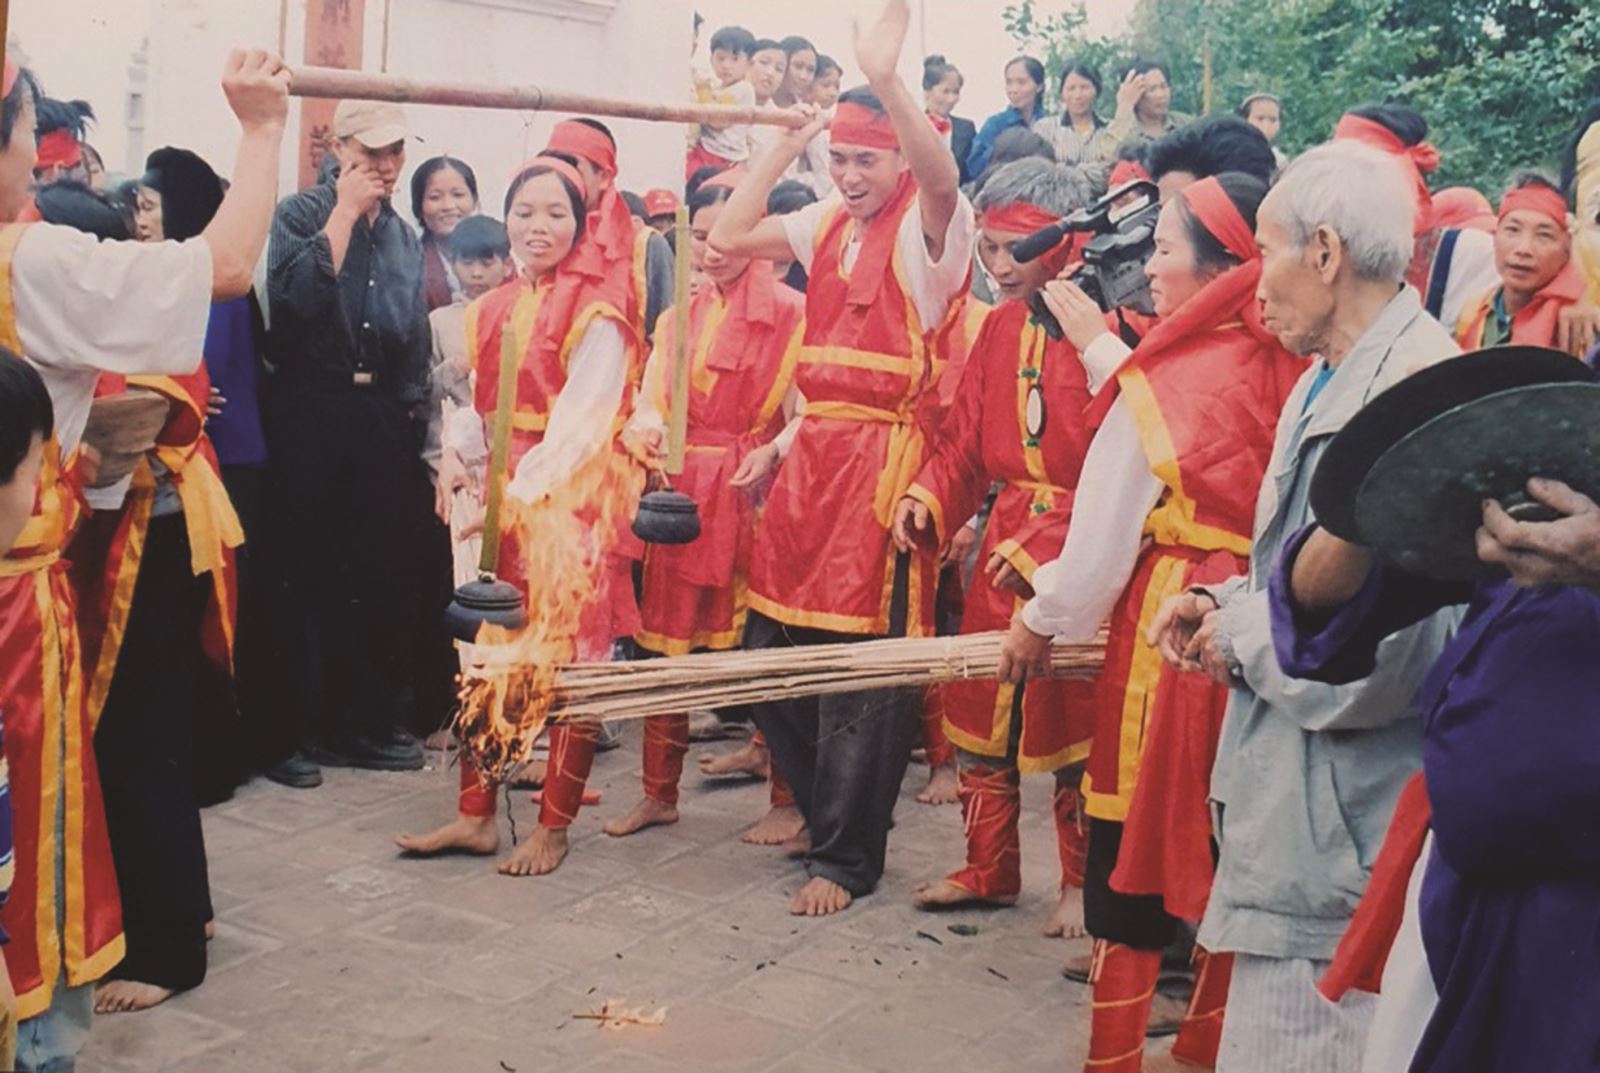 Đặc sắc lễ hội dân gian truyền thống ở vùng đất Tổ